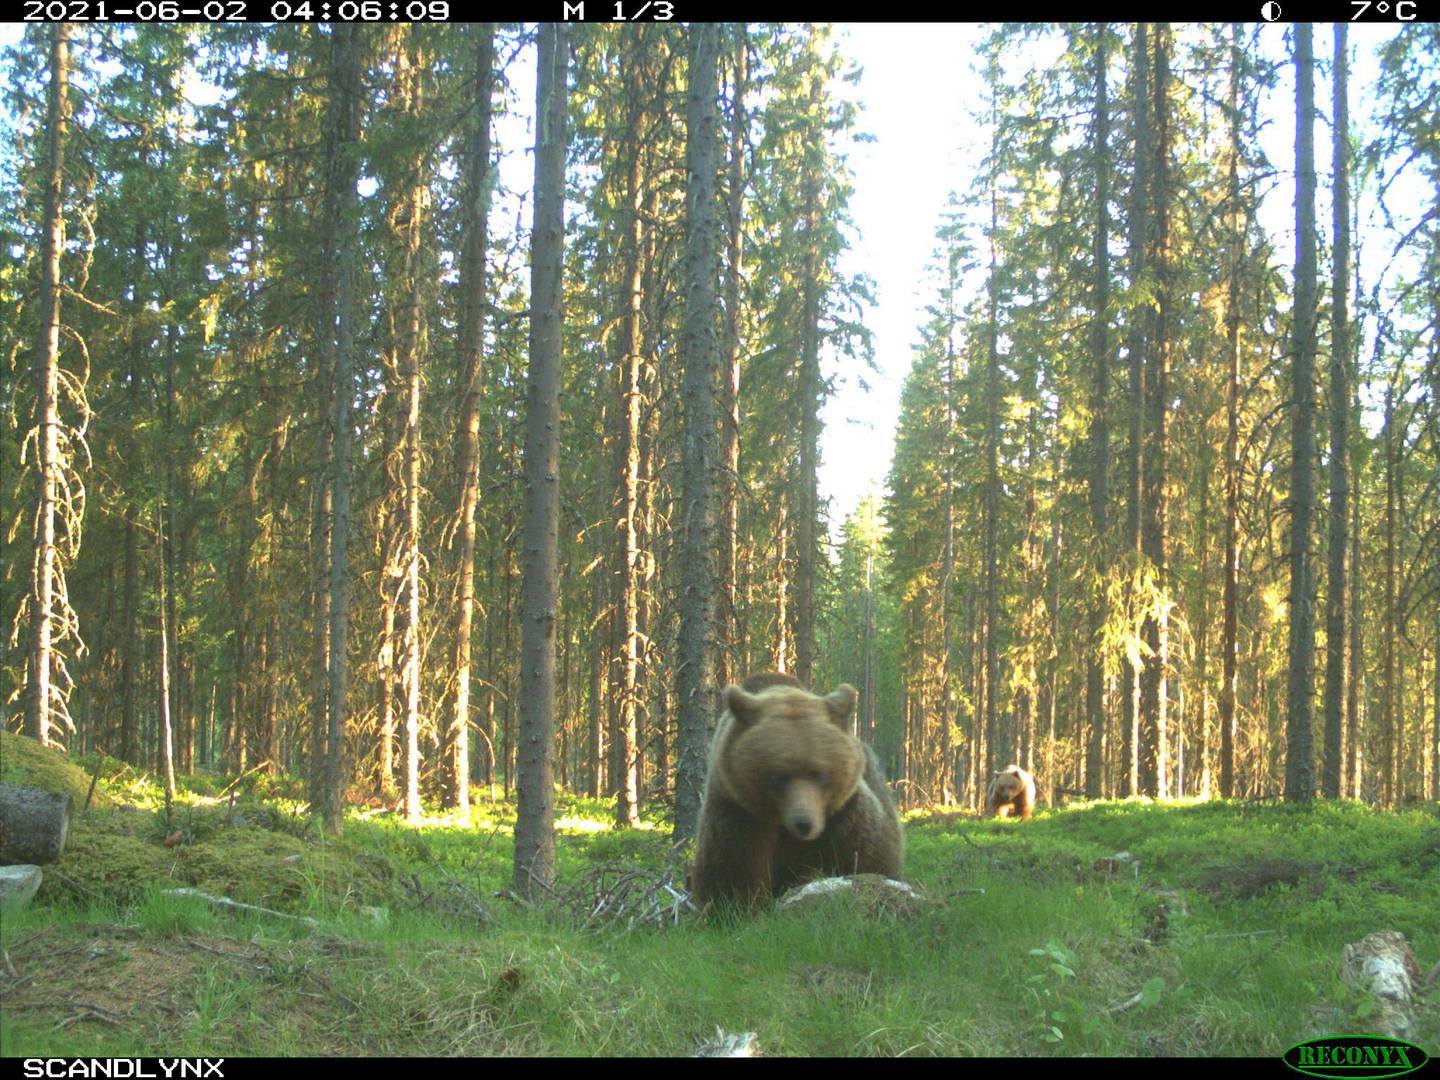 I fjor ble det registrert langt færre nye kull med bjørnunger enn hva som er det nasjonale målet. Likevel mener regjeringen at det bør utredes et lavere bestandsmål for bjørn. Disse ble fotografert i Våler i sommer.